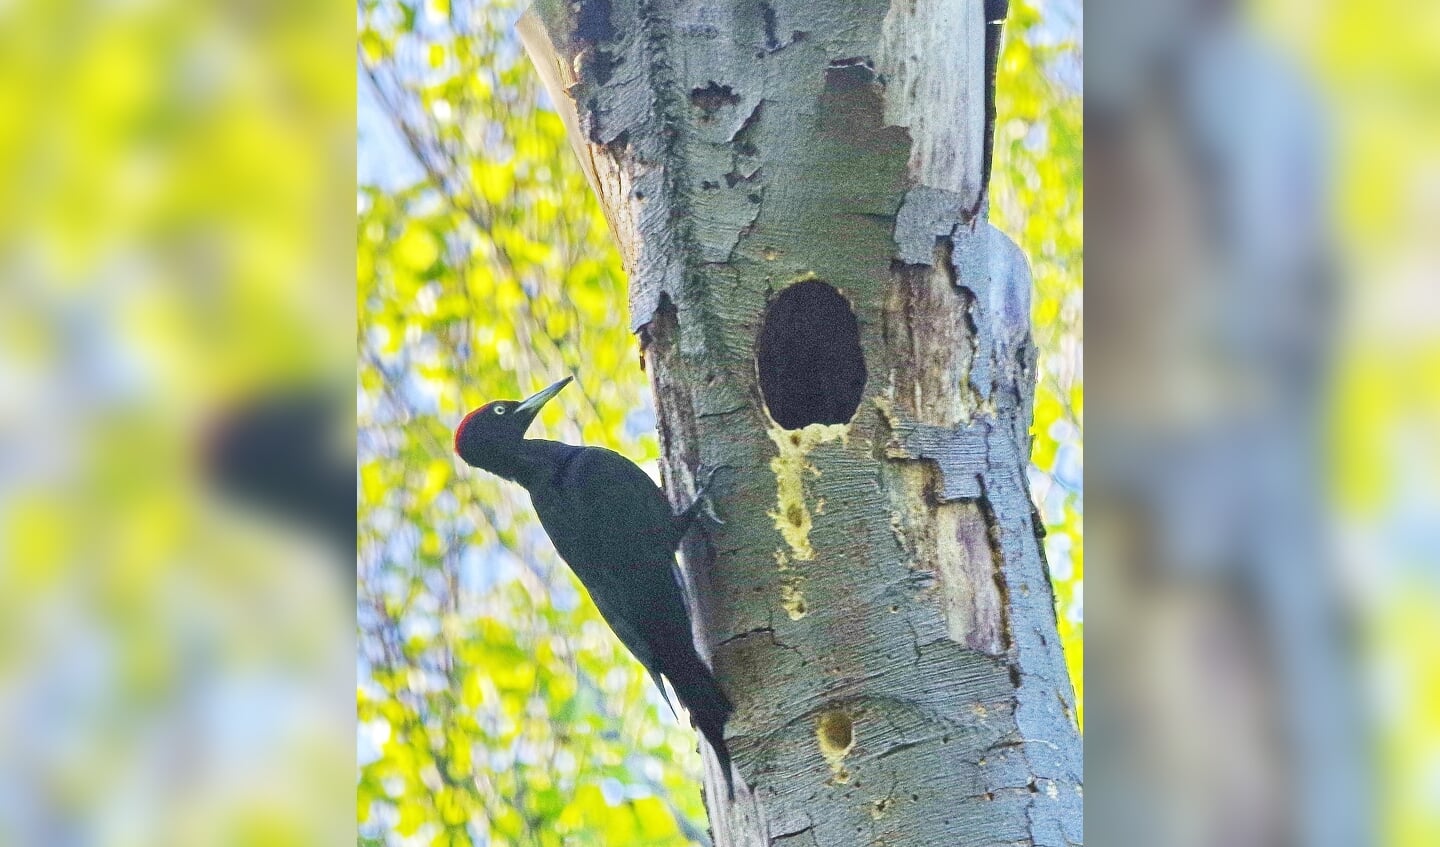 Het mannetje meldt zich bij het nest door enkele kreten te laten horen.